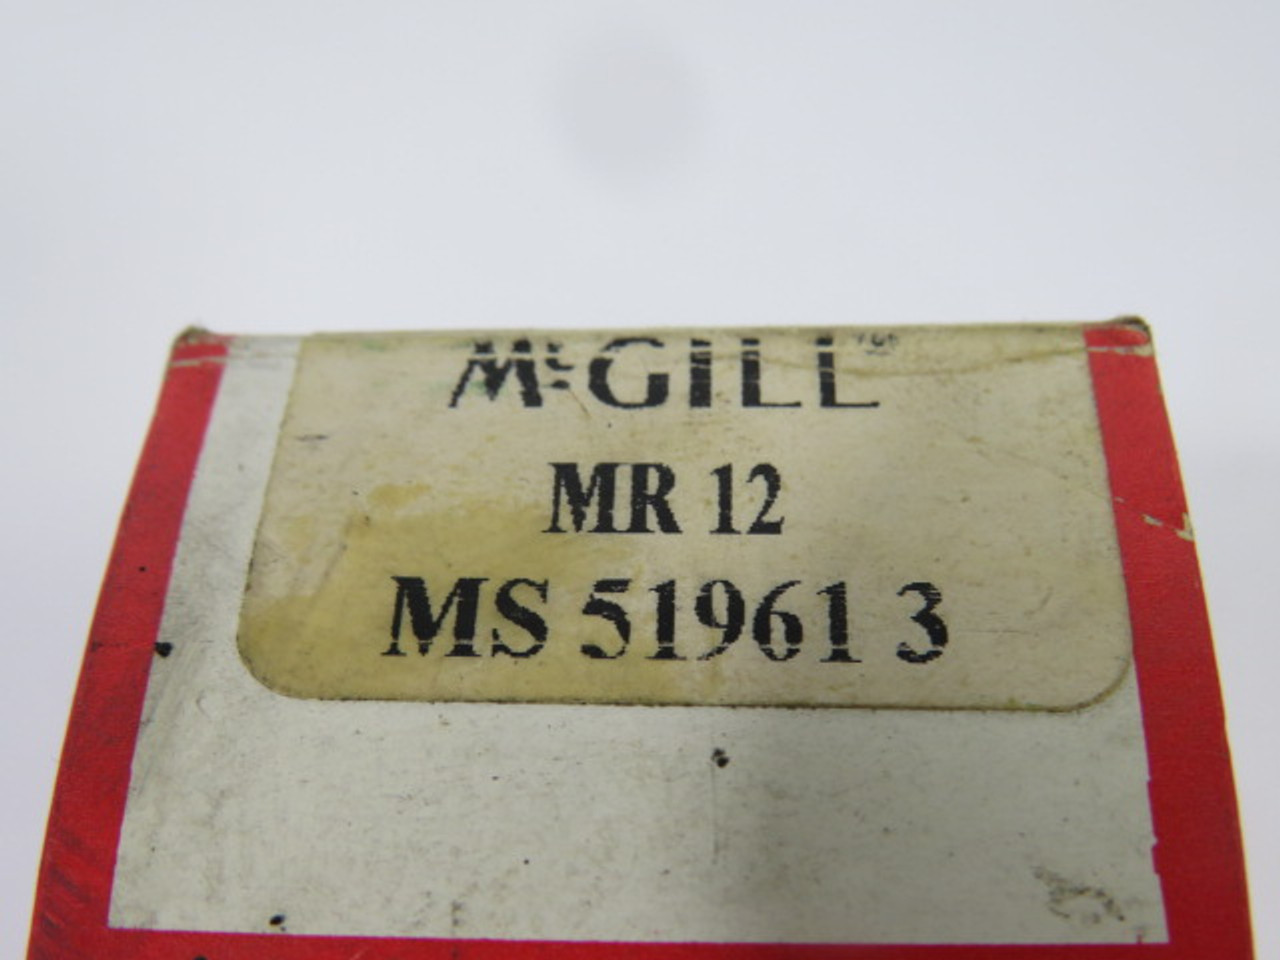 McGill MS-51961-3 Precision Bearing OD 30mm ID 22mm ! NEW !